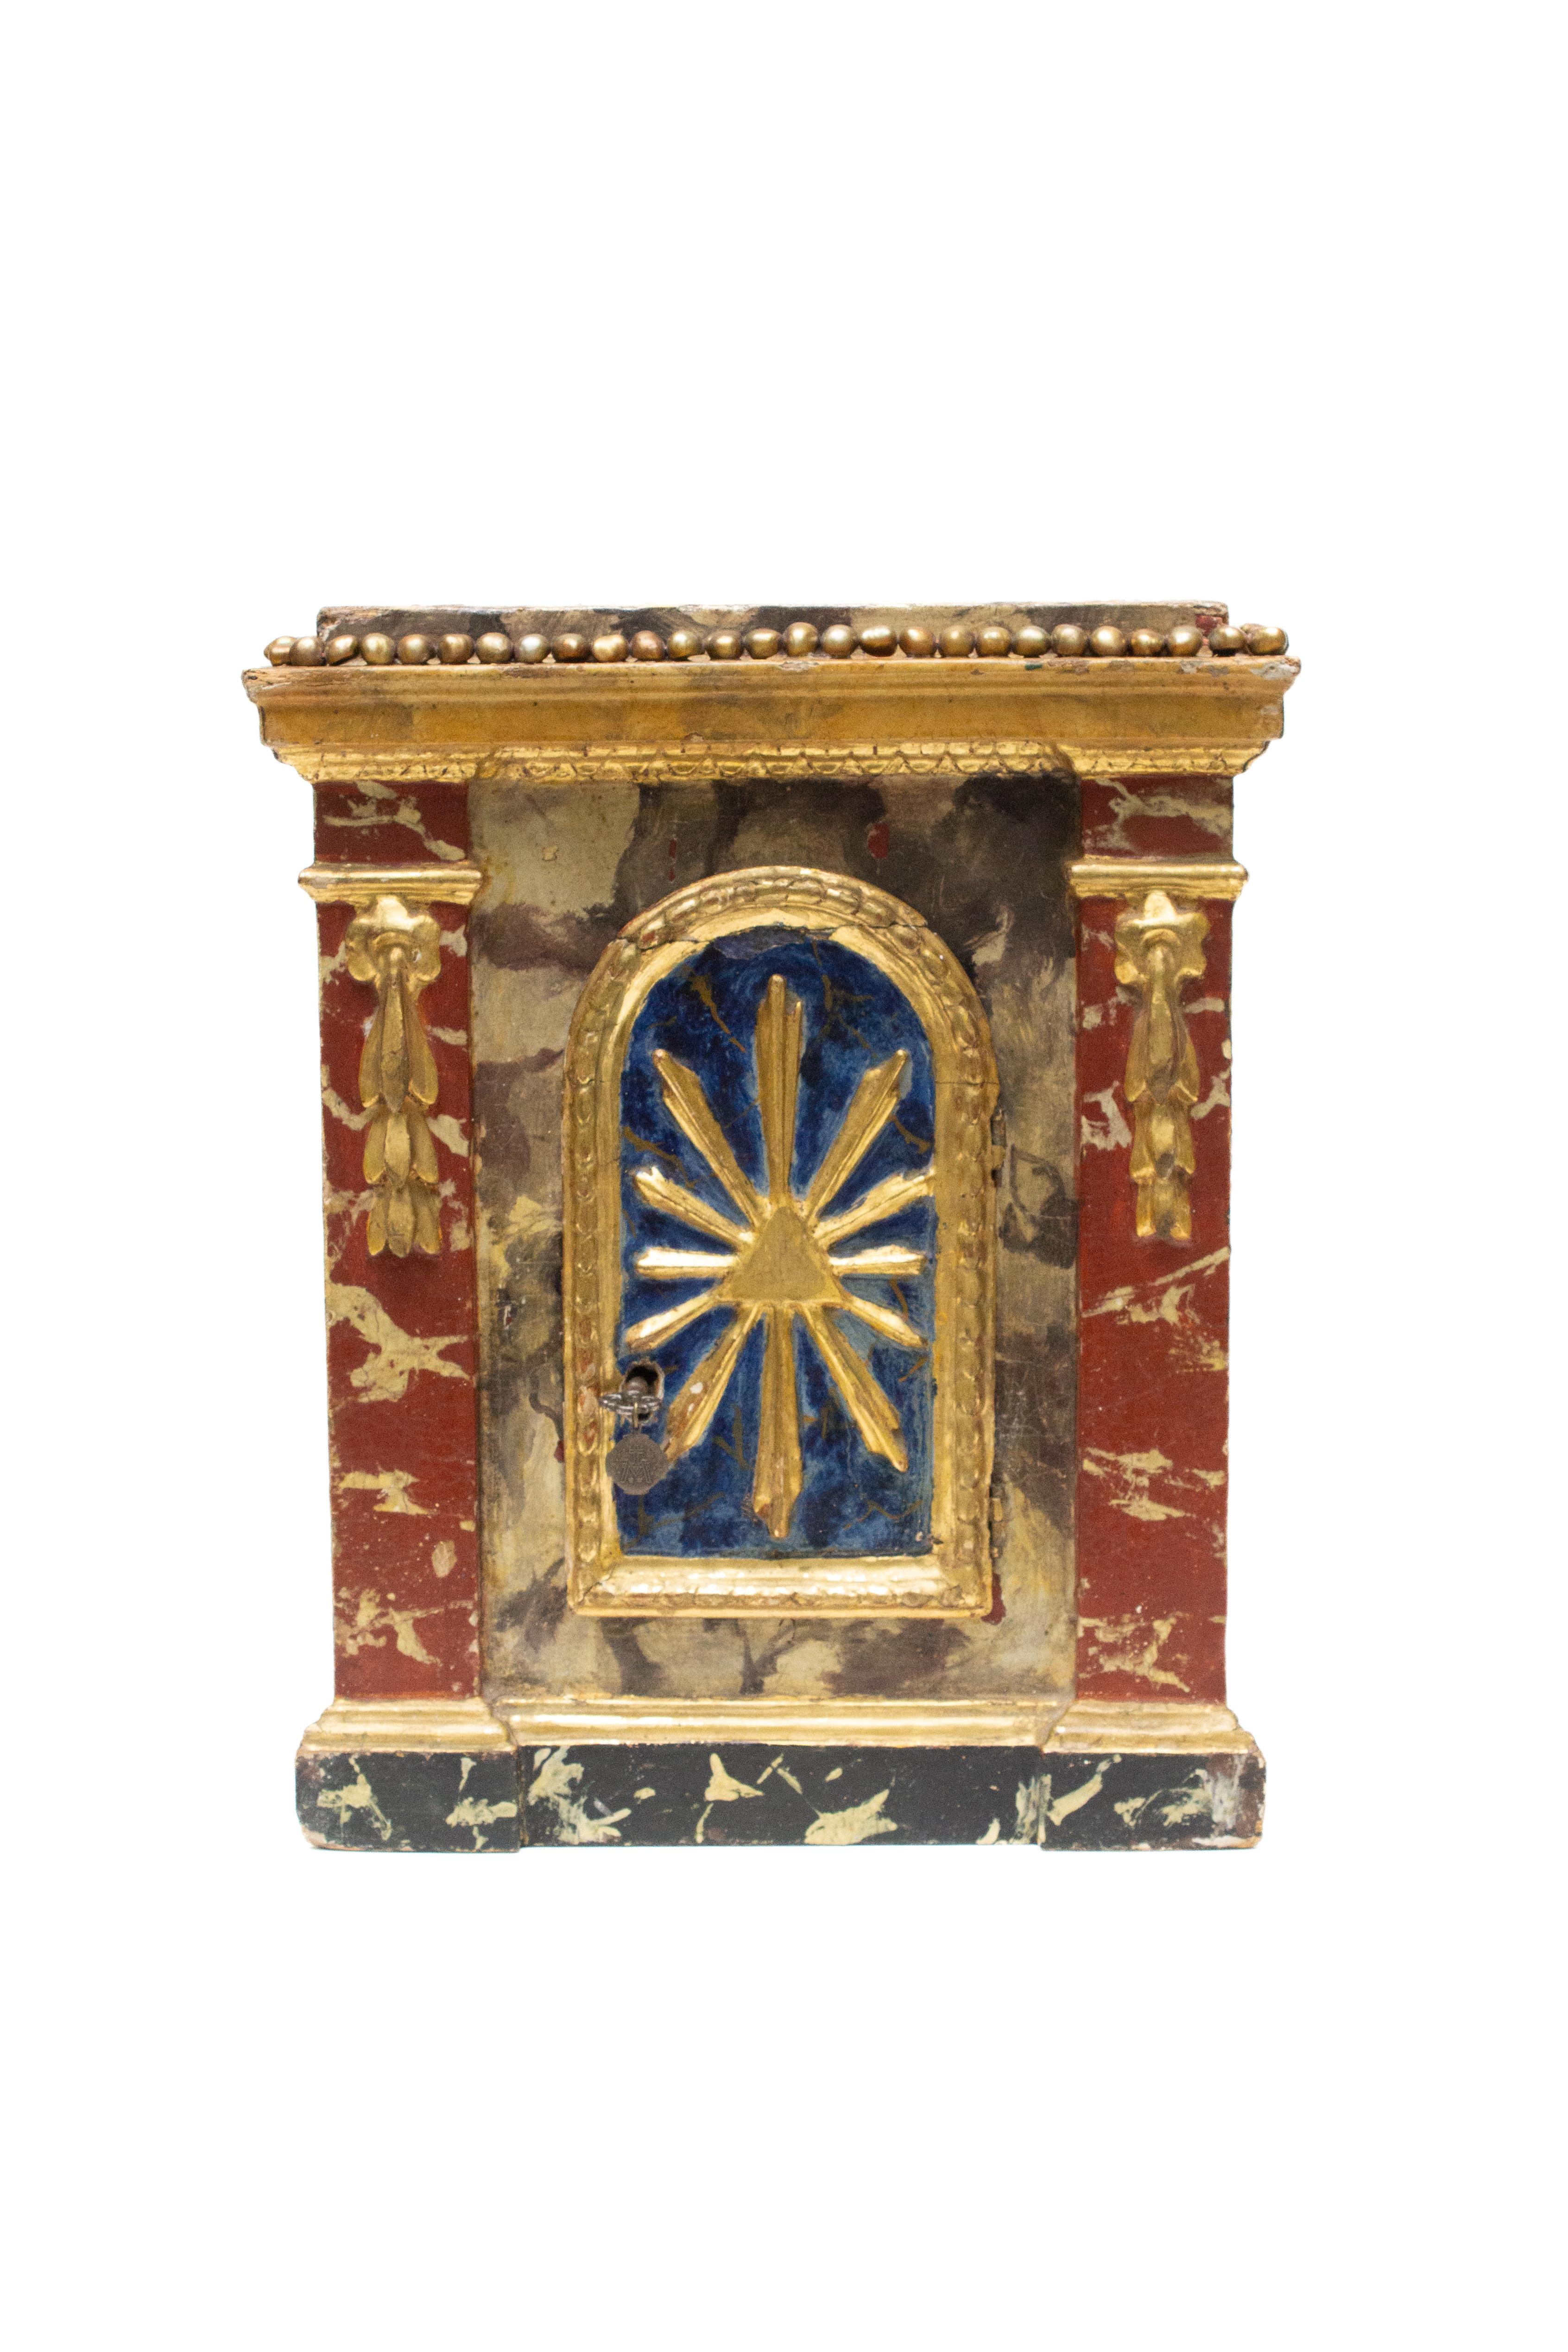 Tabernacle italien du XVIIIe siècle avec perles baroques de Venise. Il est peint et sculpté à la main avec des détails dorés et un effet de marbre peint. La porte du tabernacle est ornée d'un soleil en feuille d'or et d'une clé d'origine